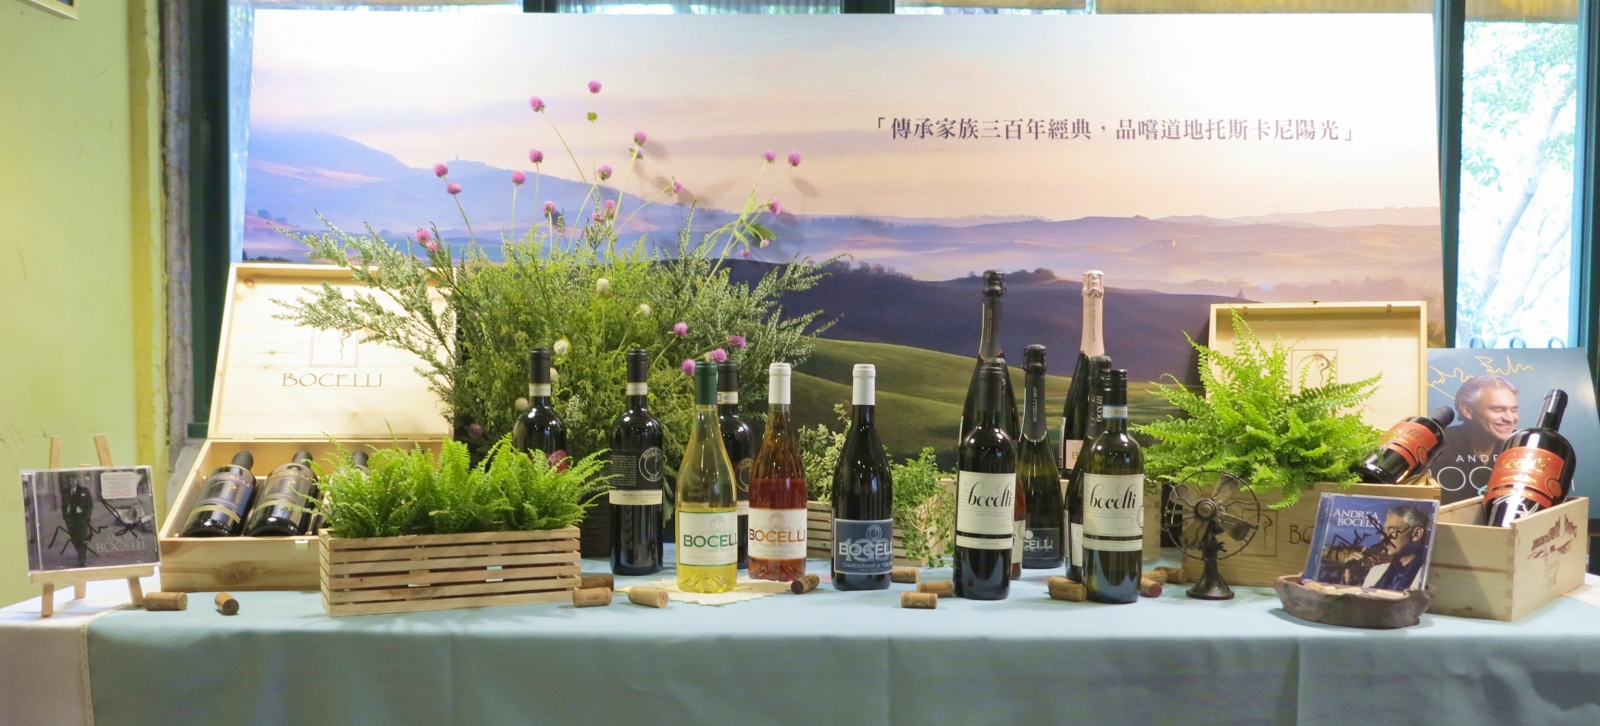 亞洲只有台灣以及新加坡兩地可以喝得到波伽利葡萄酒完整的18支酒款。